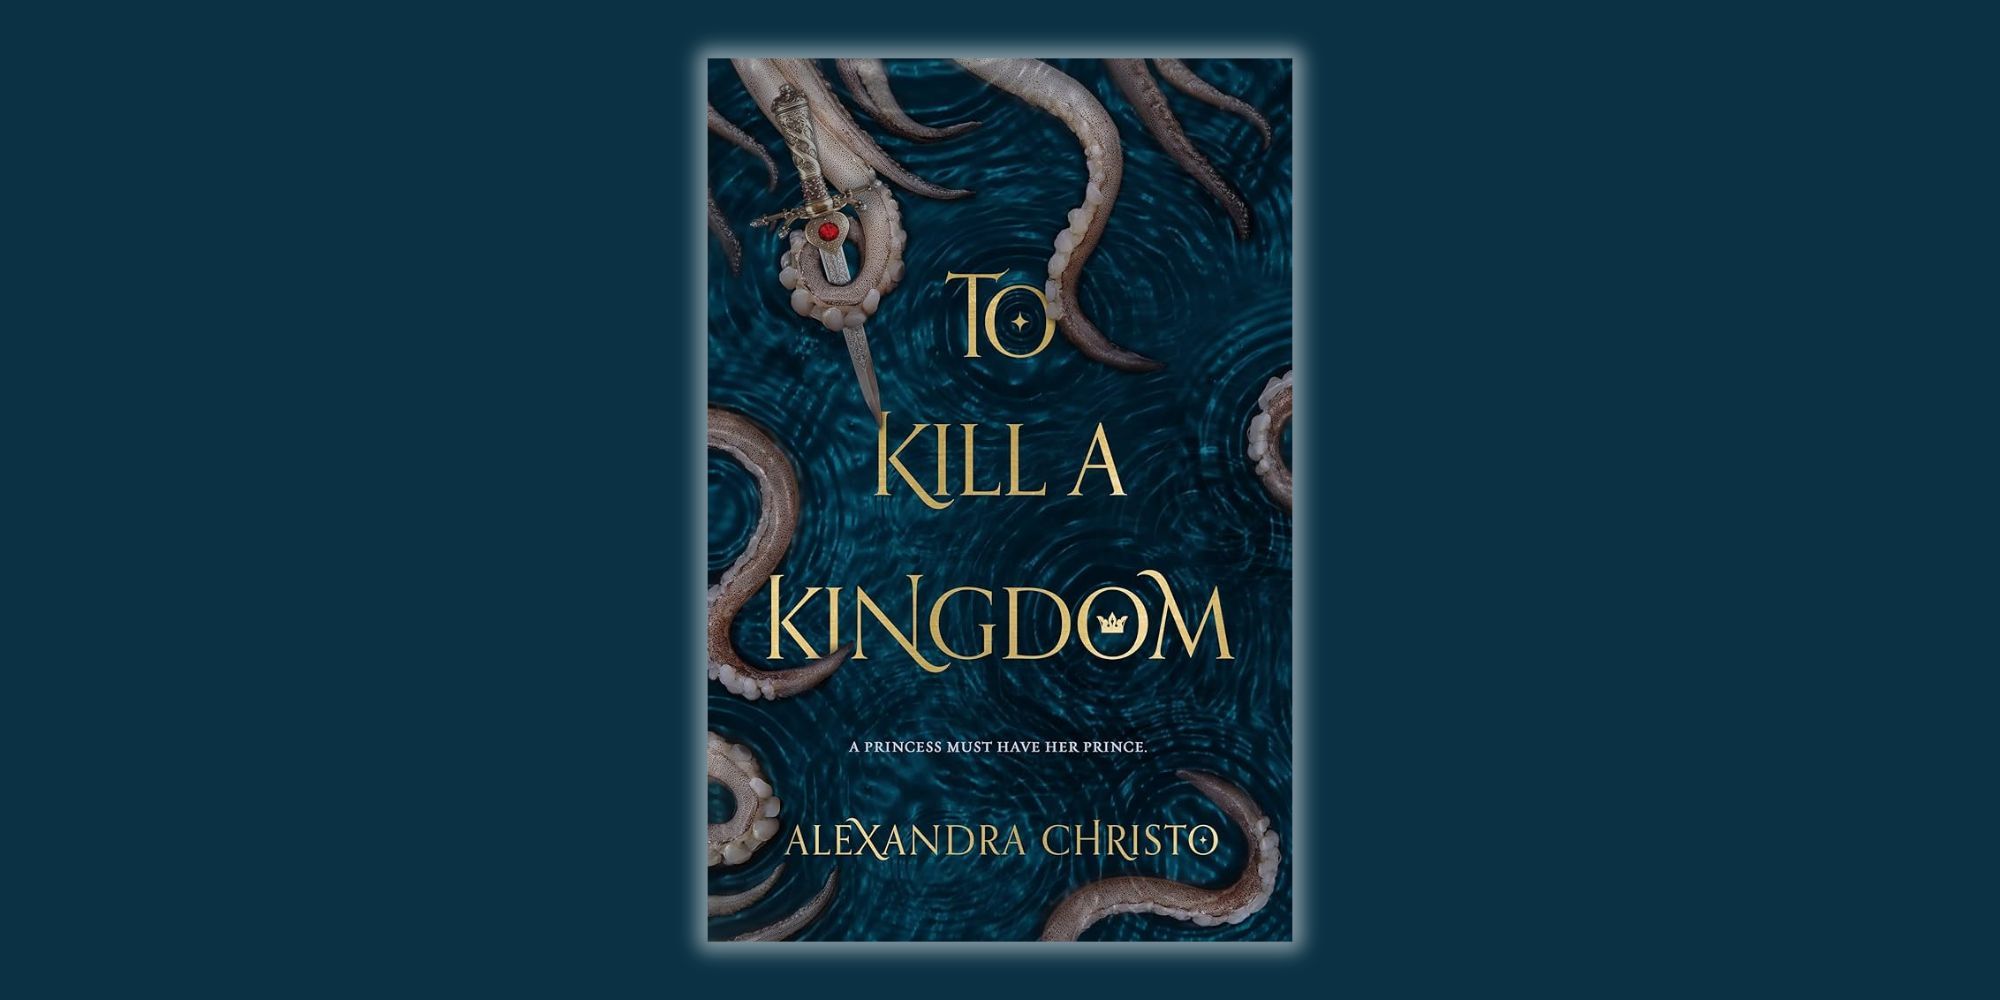 To Kill a Kingdom book cover